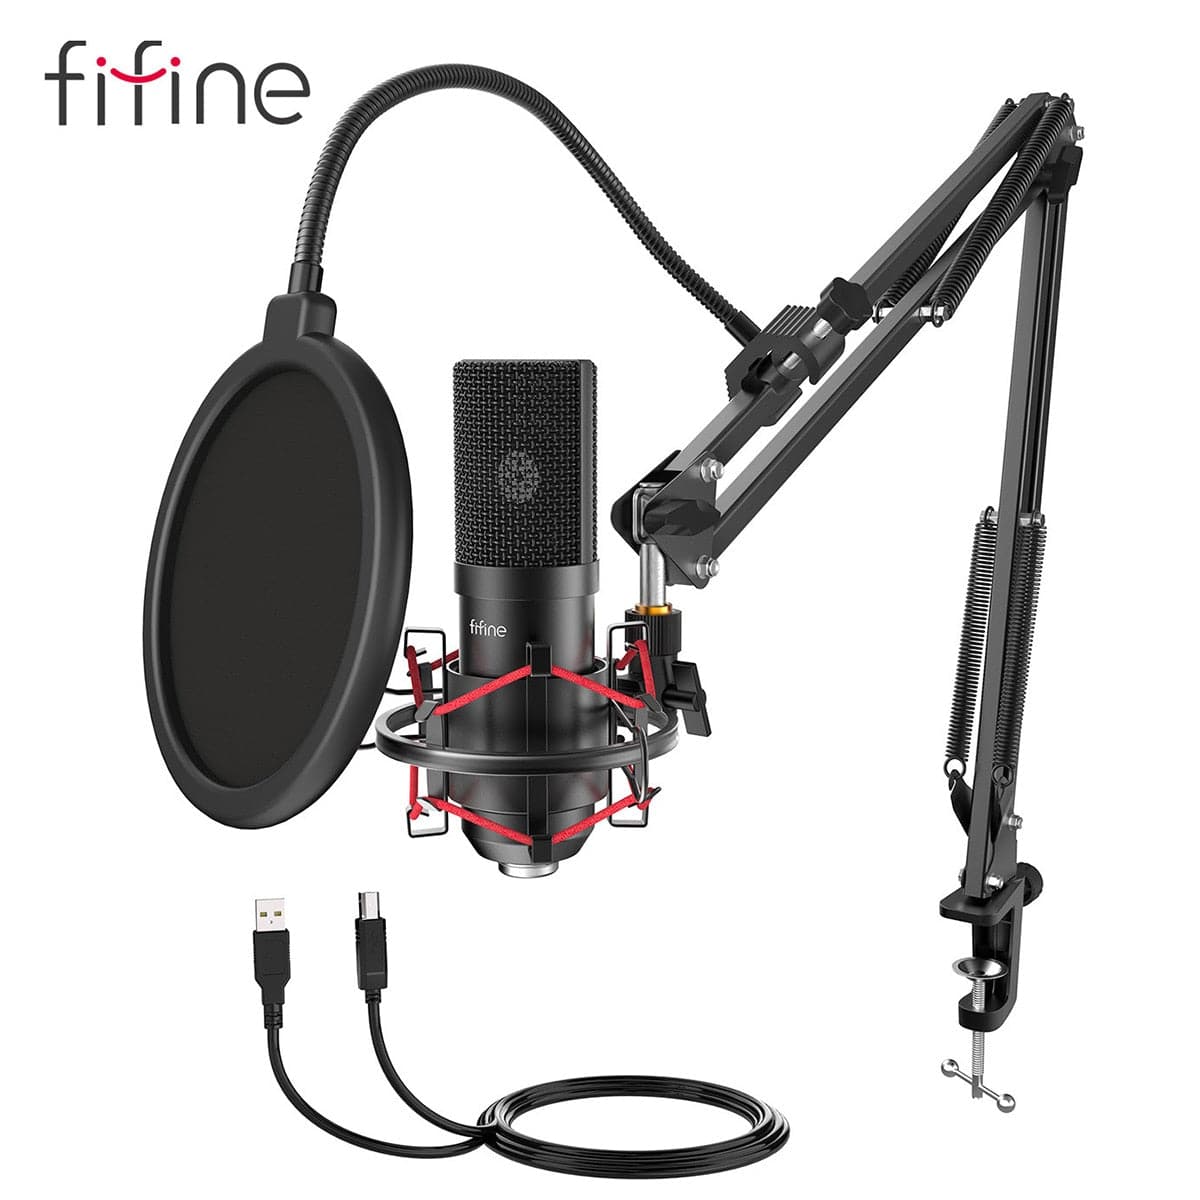 FIFINE T669 USB Studio Condenser Microphone/open box for parts